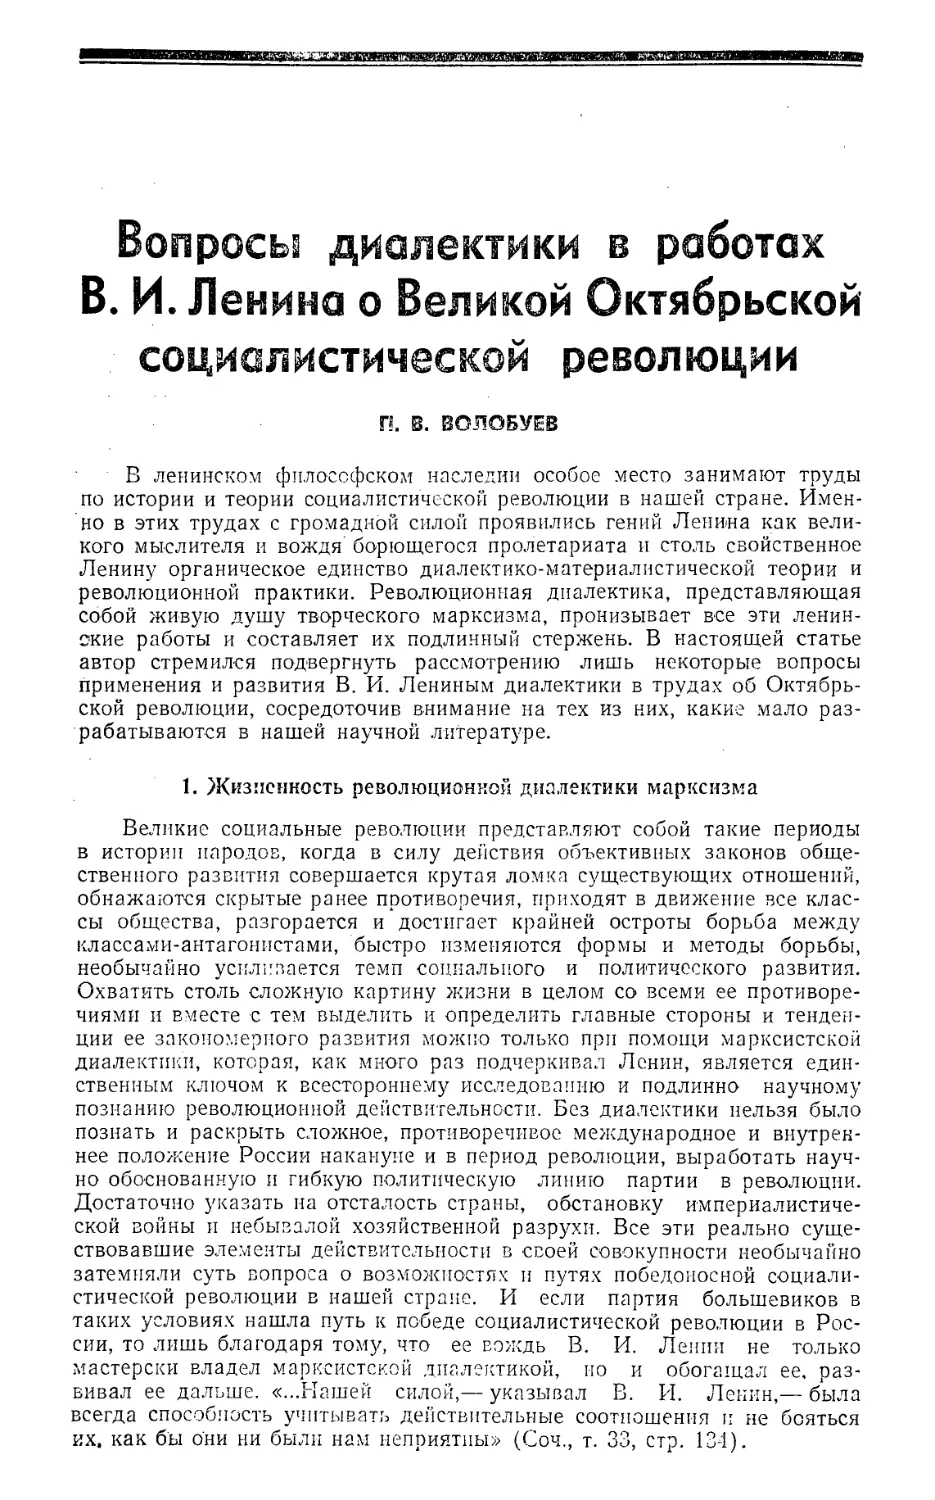 П. В. Волобуев — Вопросы диалектики в работах В. И. Ленина о Великой Октябрьской социалистической революции